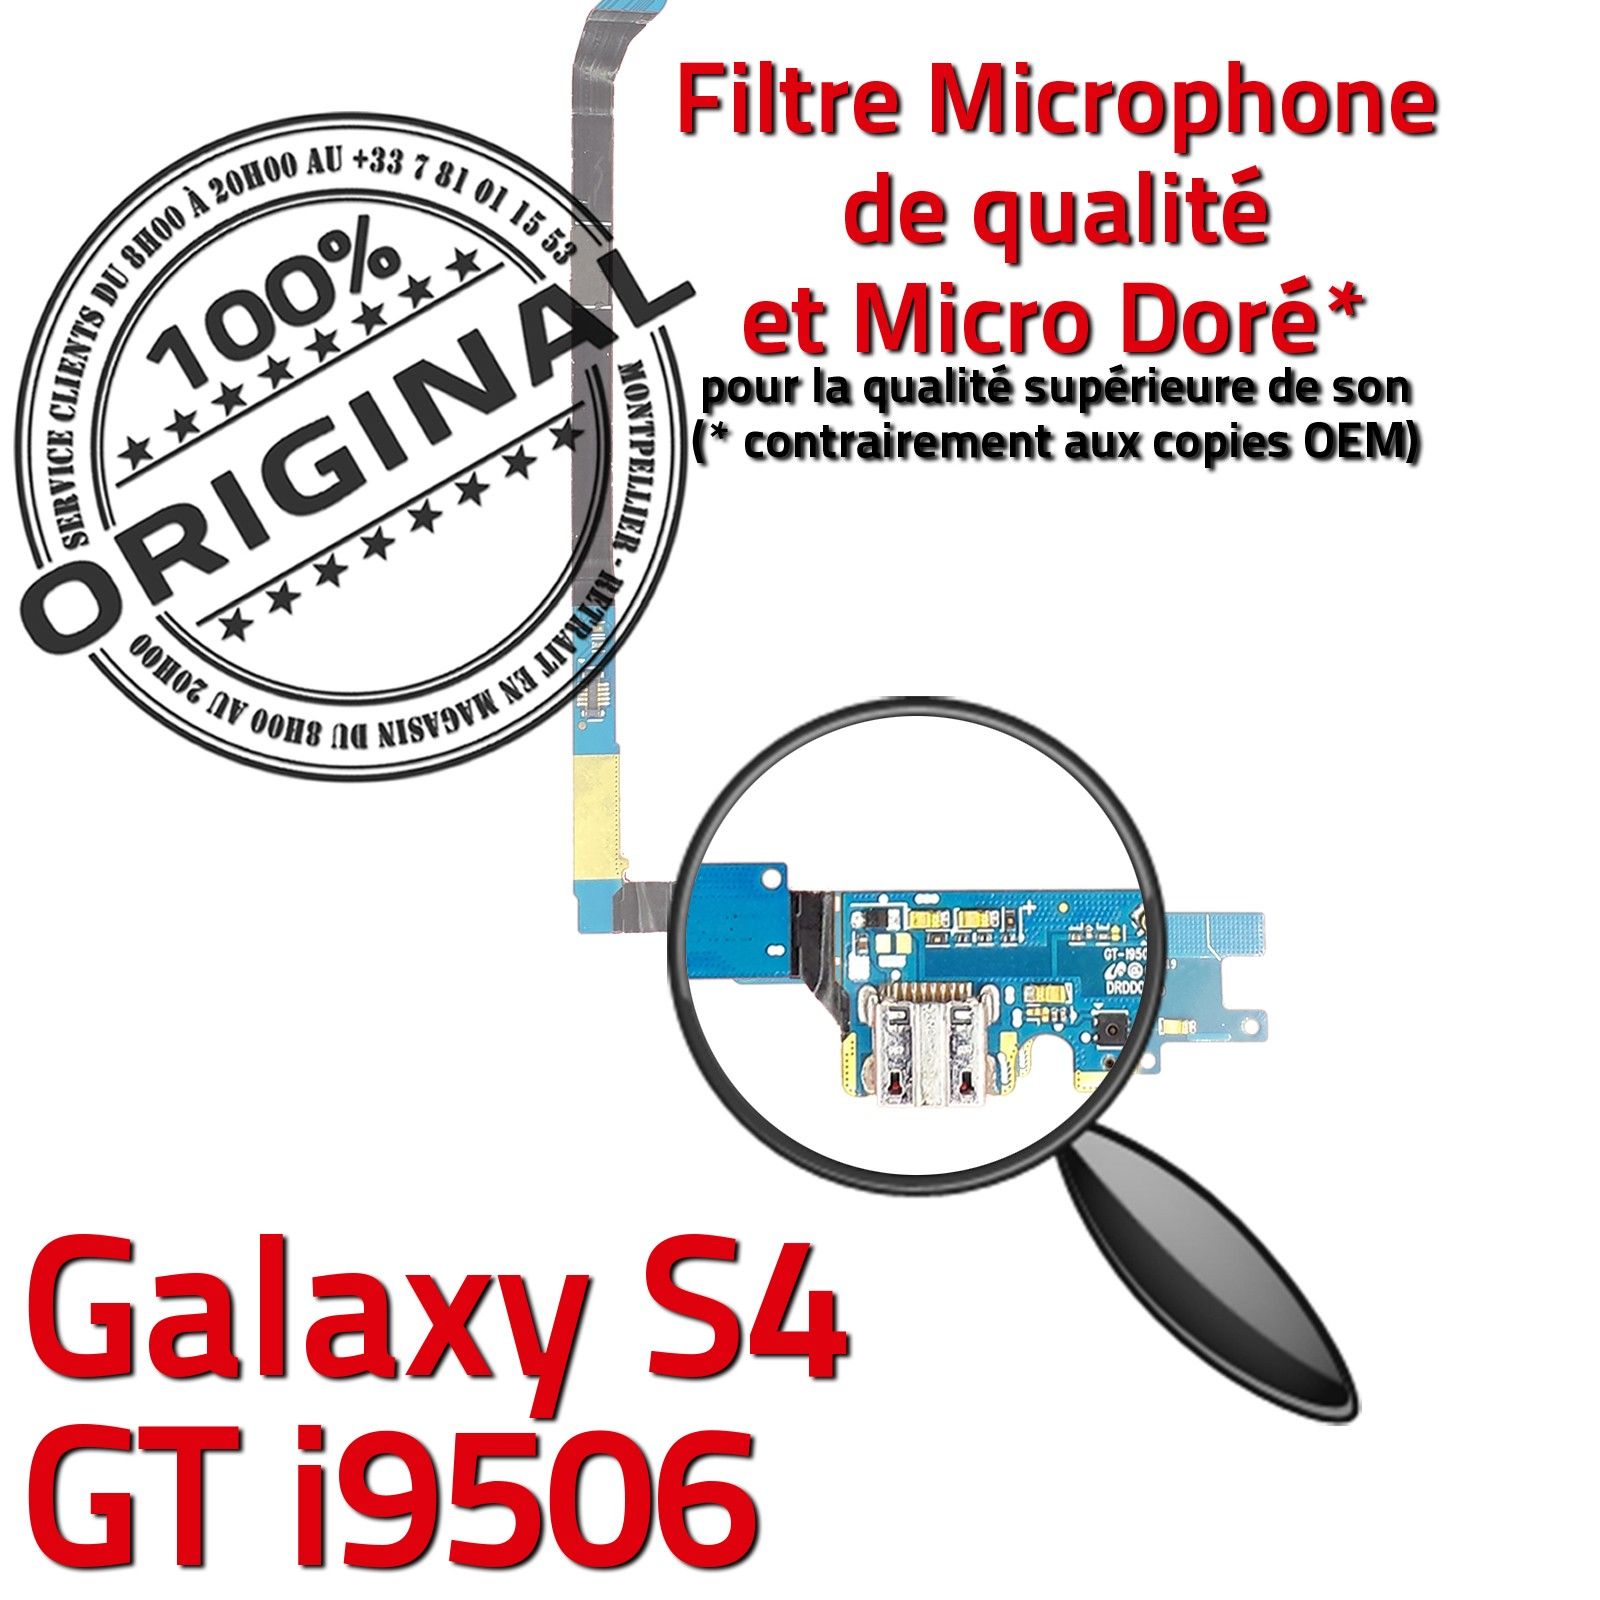 ORIGINAL Samsung Connecteur Charge Galaxy S4 GT i9506 Prise Chargeur  MicroUSB Nappe OFFICIELLE Qualité Microphone Antenne RESEAU